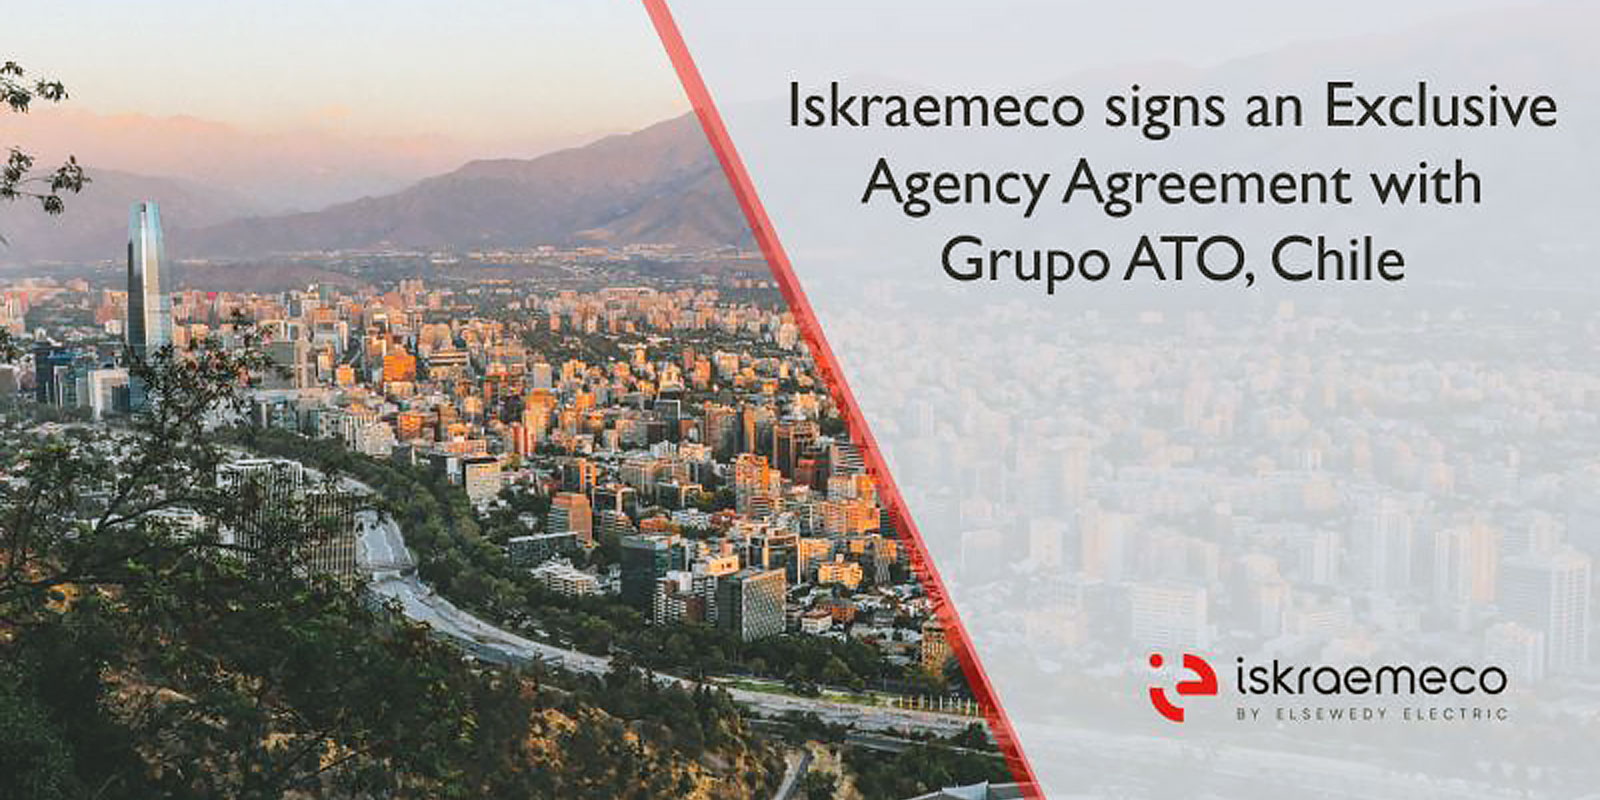 إسكرا إميكو توقع اتفاقية وكالة حصرية مع جروبو أتو في تشيلي